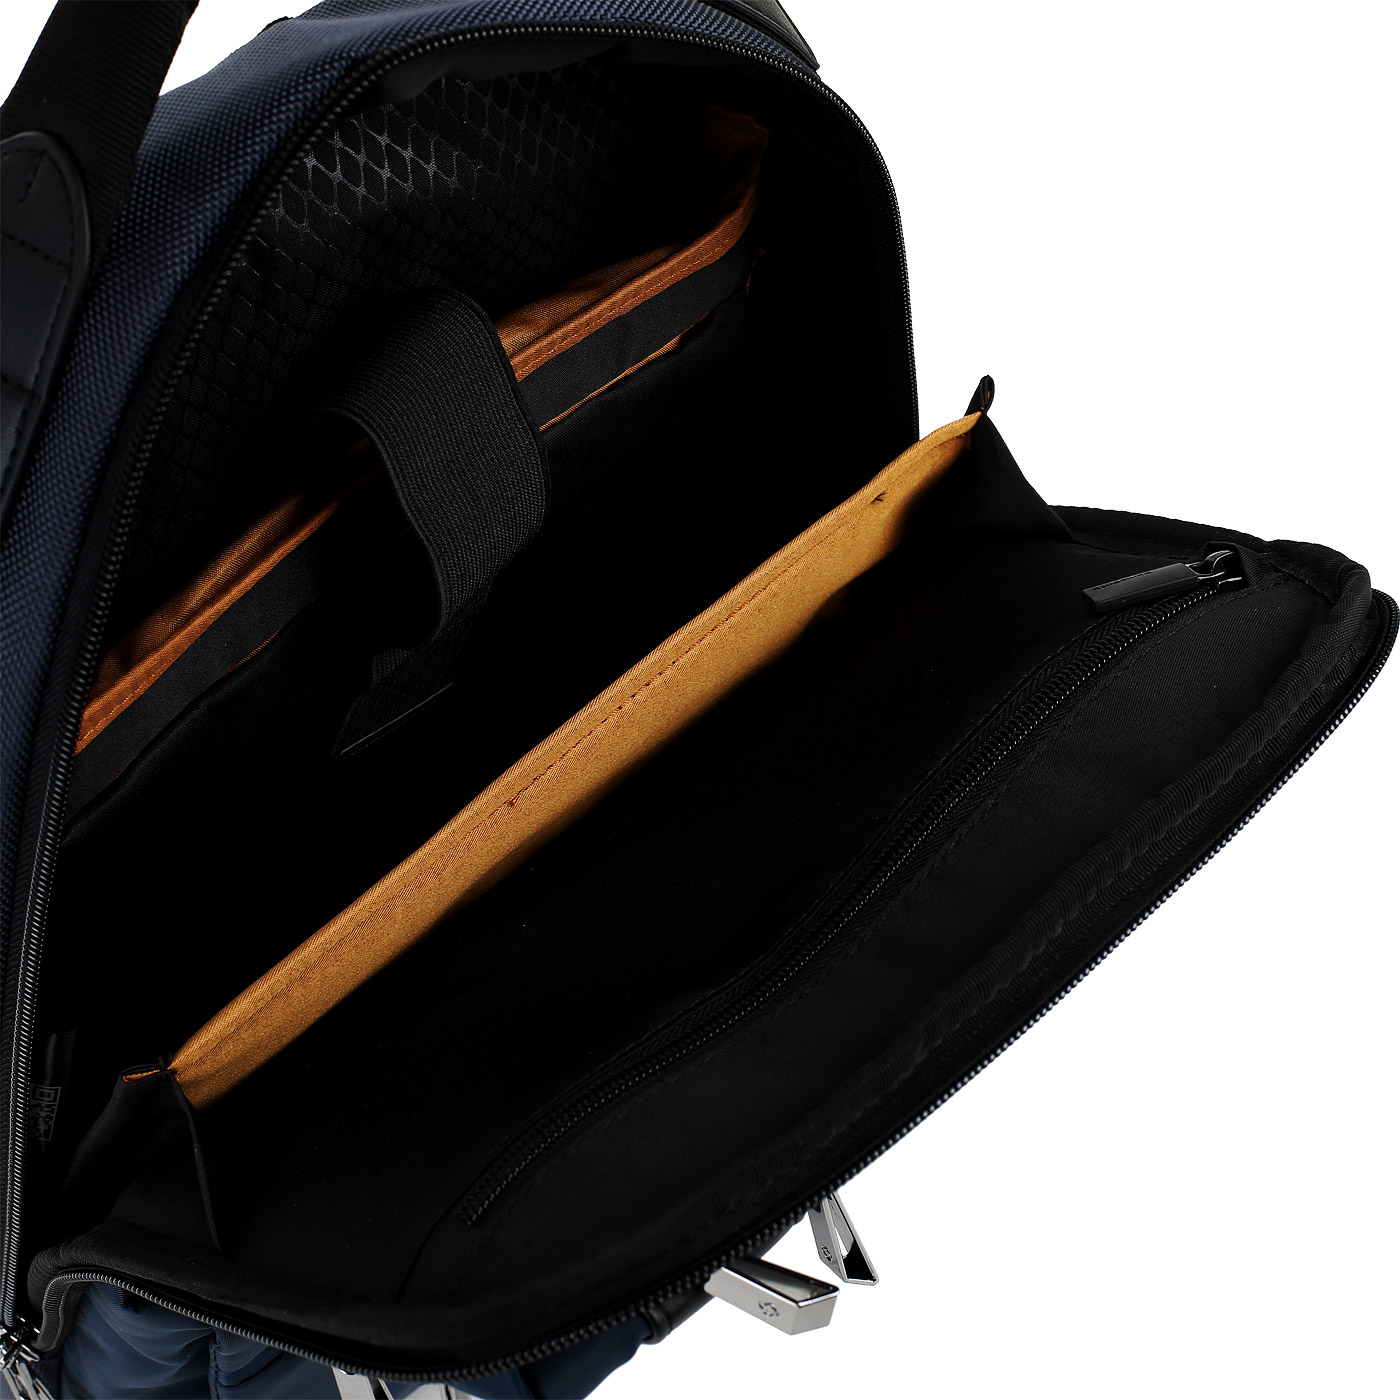 Рюкзак для ноутбука Samsonite Openroad